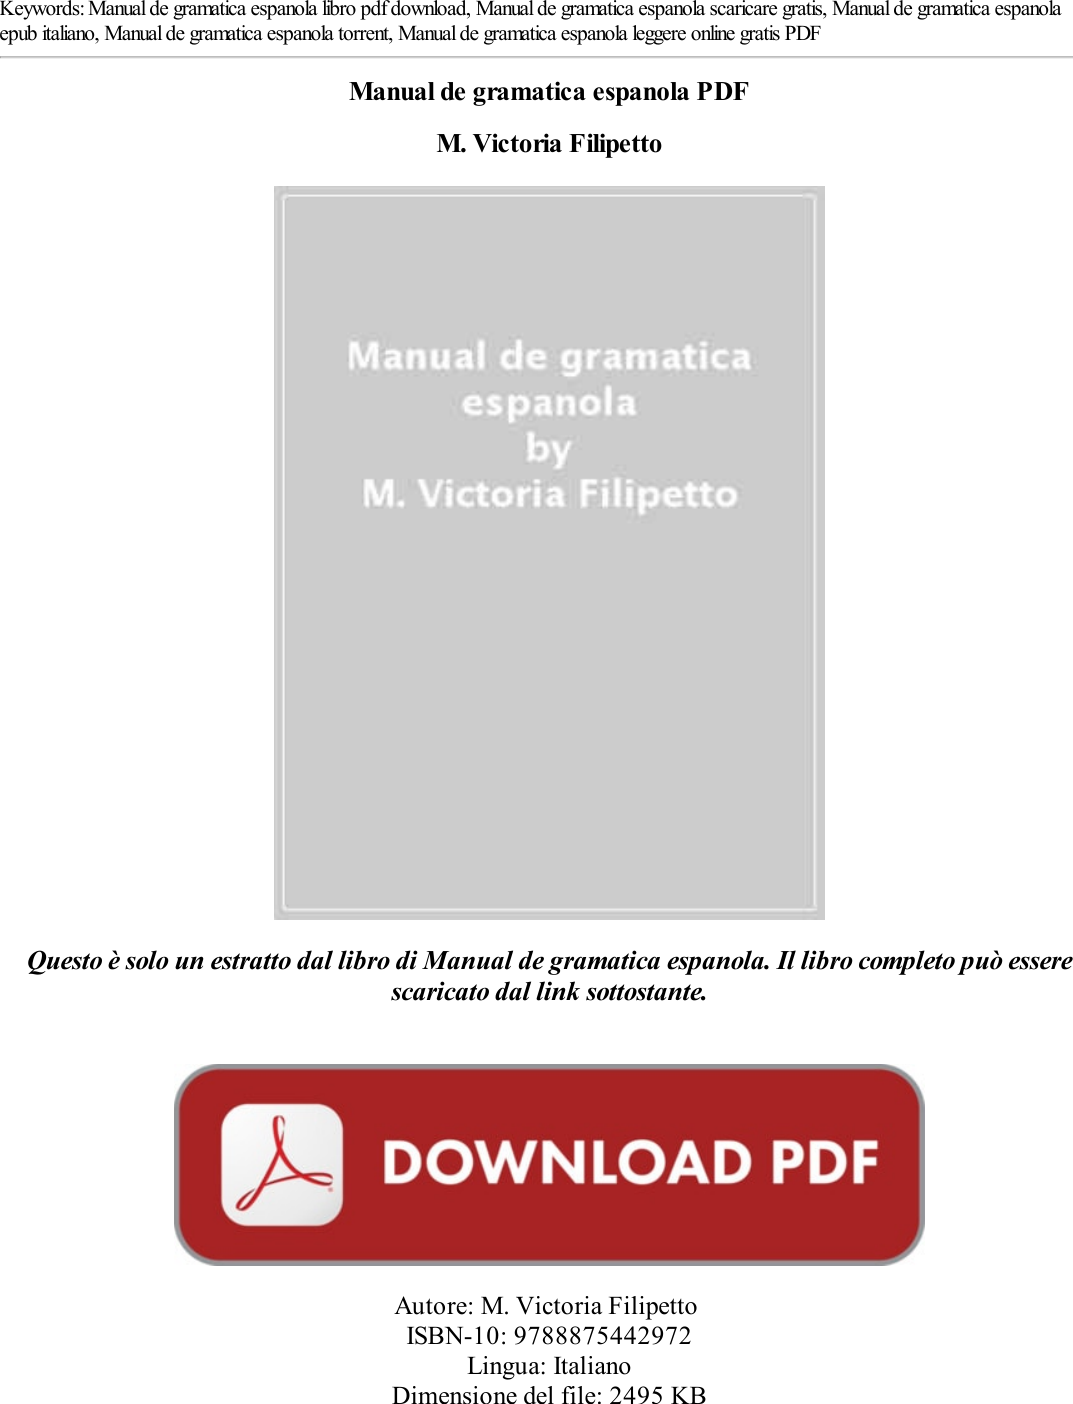 Scaricare Manual De Gramatica Espanola Pdf Epub Mobi 7099mxysjr M Victoria Filipetto 7099mxysjr